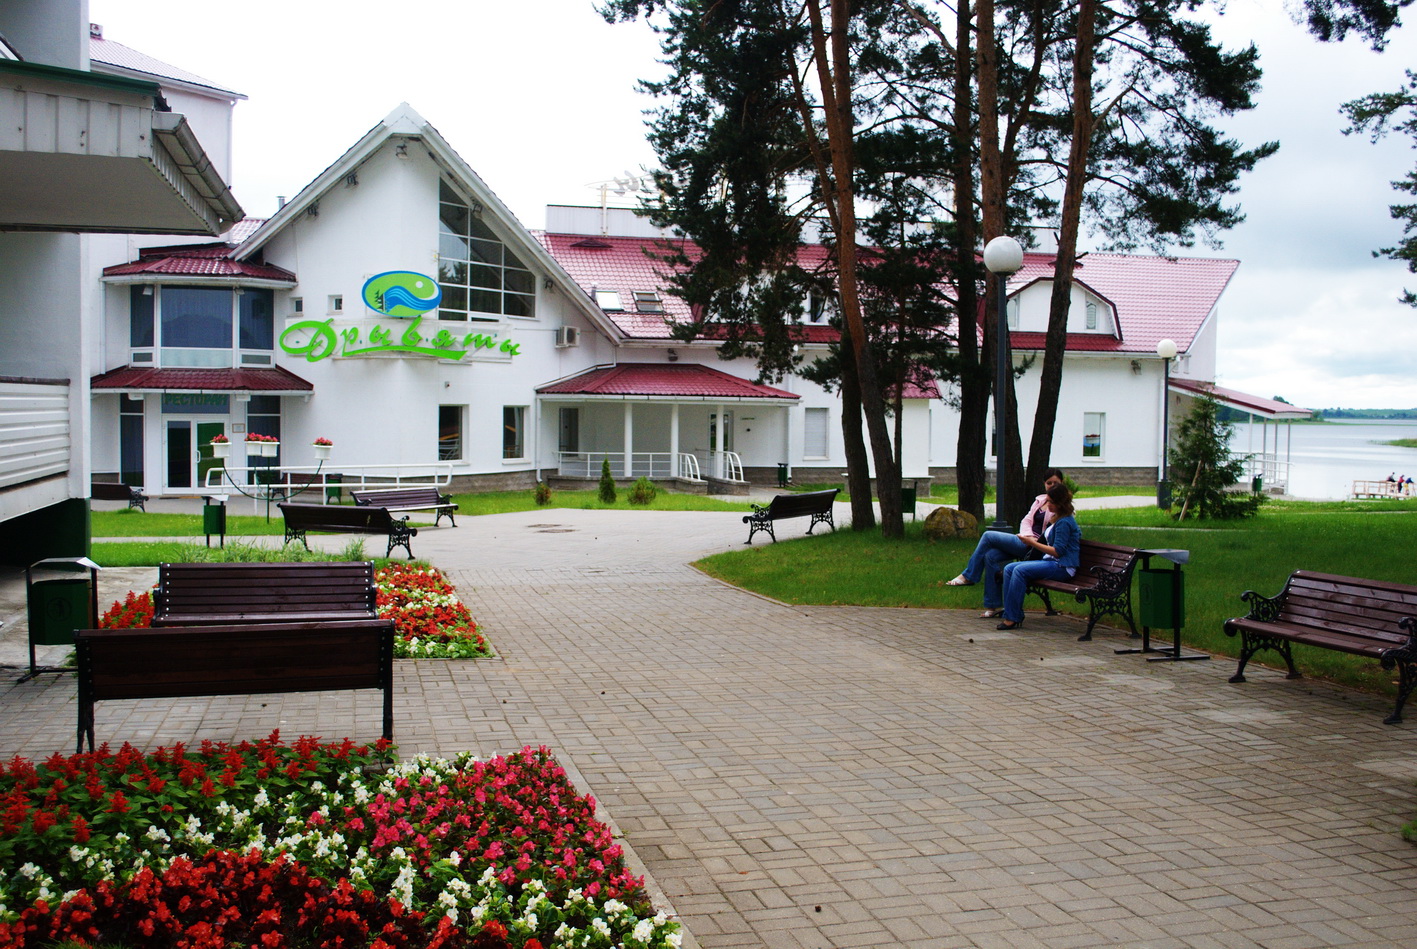 Где недорого отдохнуть в белоруссии летом